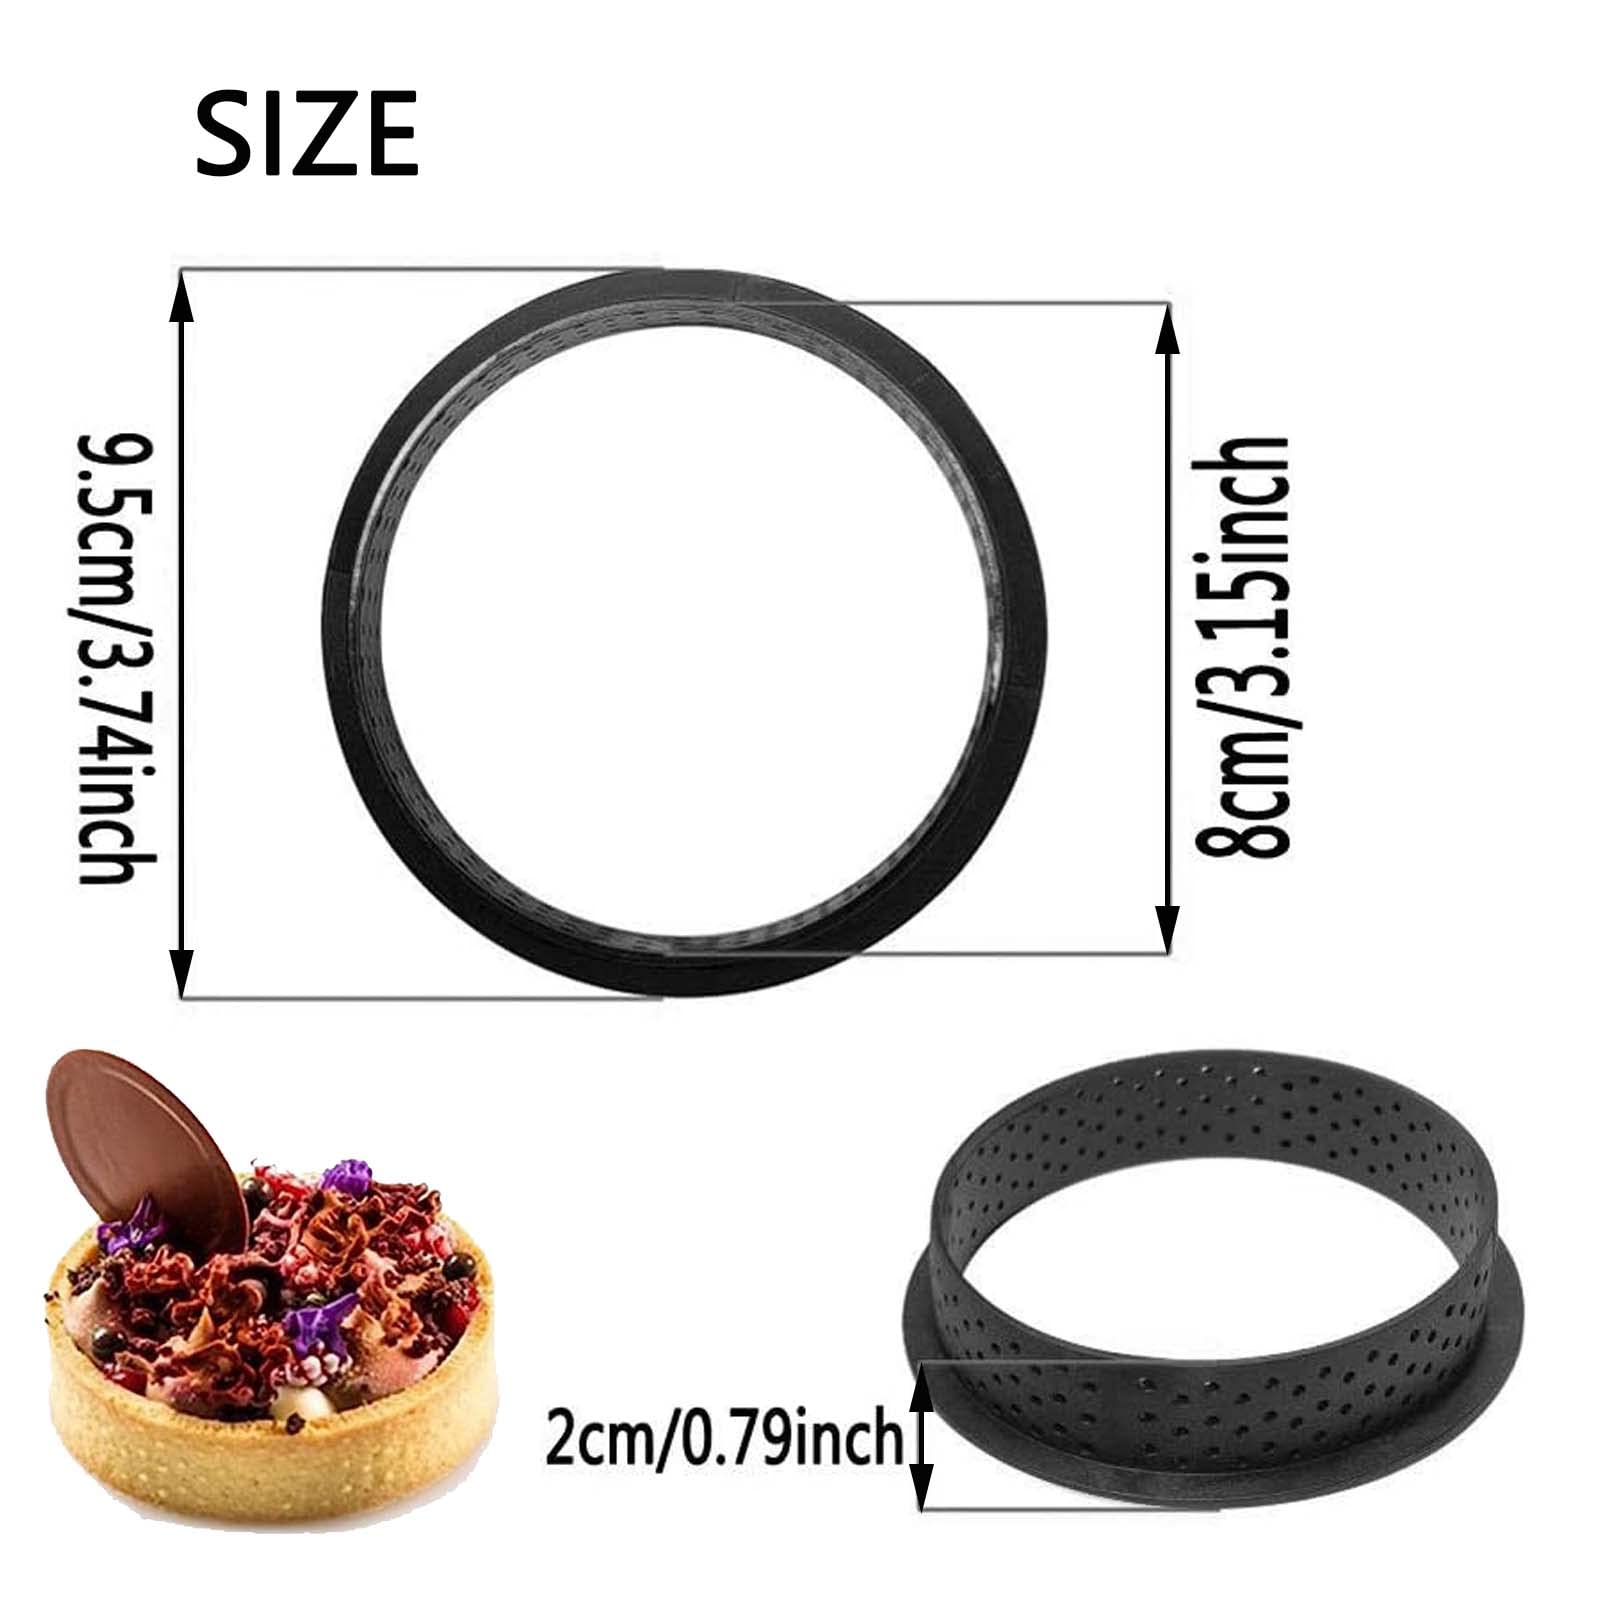 Mini Tart Ring Mold for Baking, Airlxf 8PCS Round Shape Black Cake Mold Mousse Circle Tart Ring Round Cake Molds